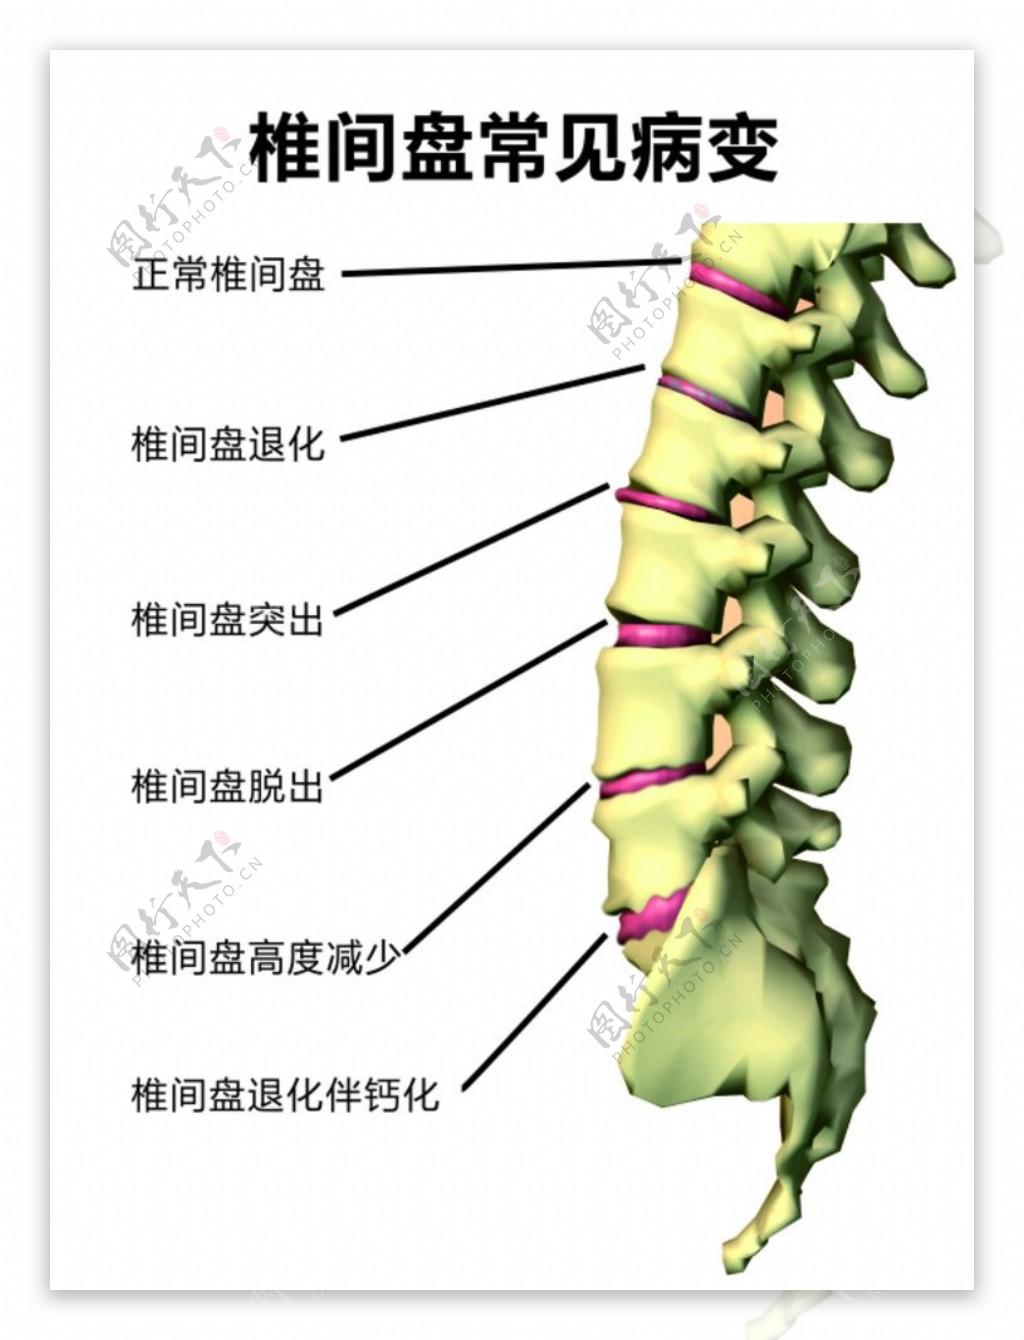 腰椎间盘常见病变